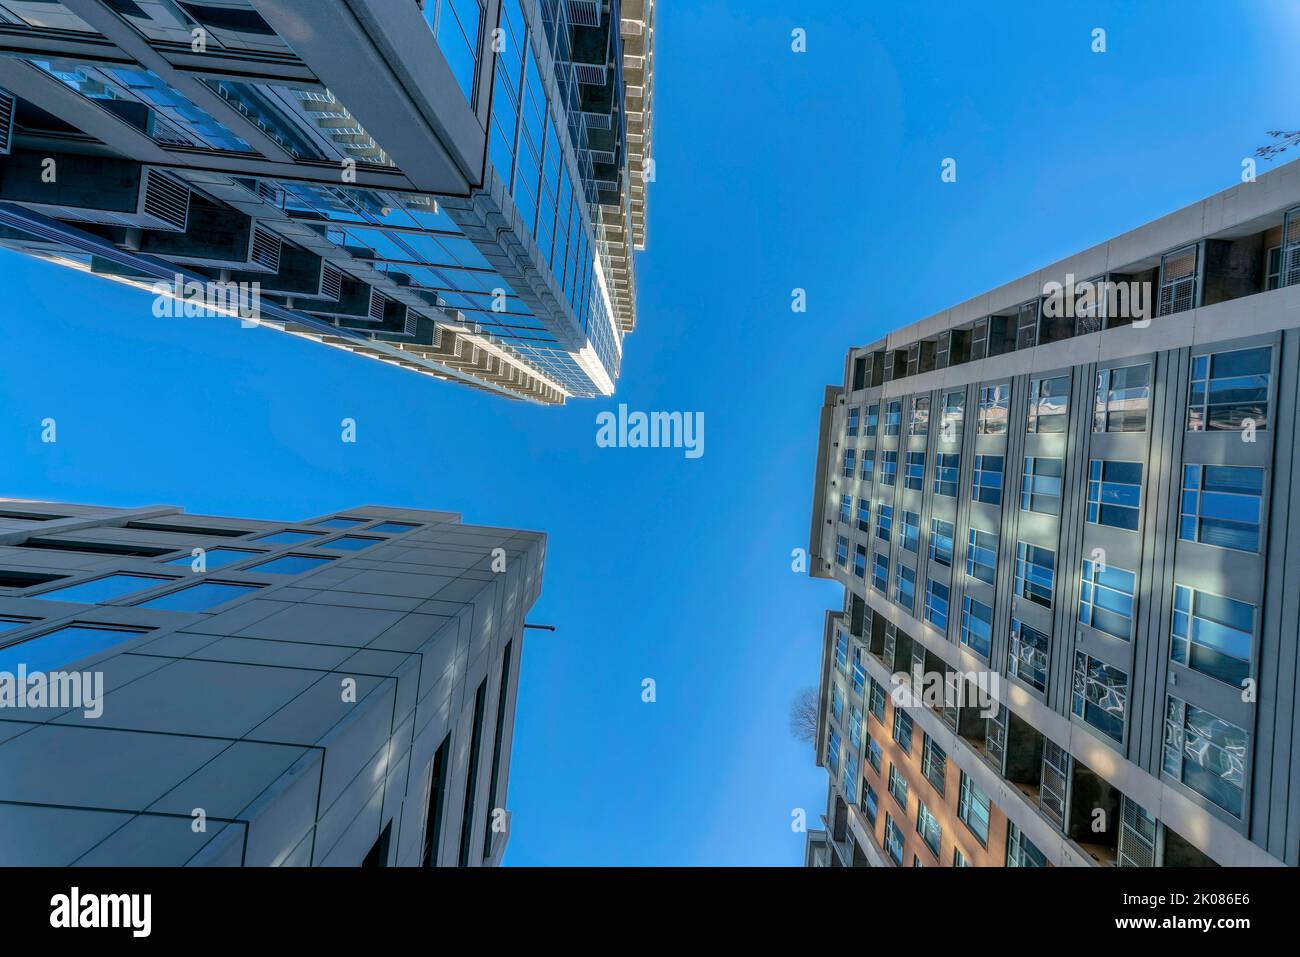 Moderne Apartments mit sonnendurchfluteten Außenflächen vor dem strahlend blauen Himmel an einem sonnigen Tag. Blick auf moderne Wohngebäude mit Fenstern, die das widerspiegeln Stockfoto